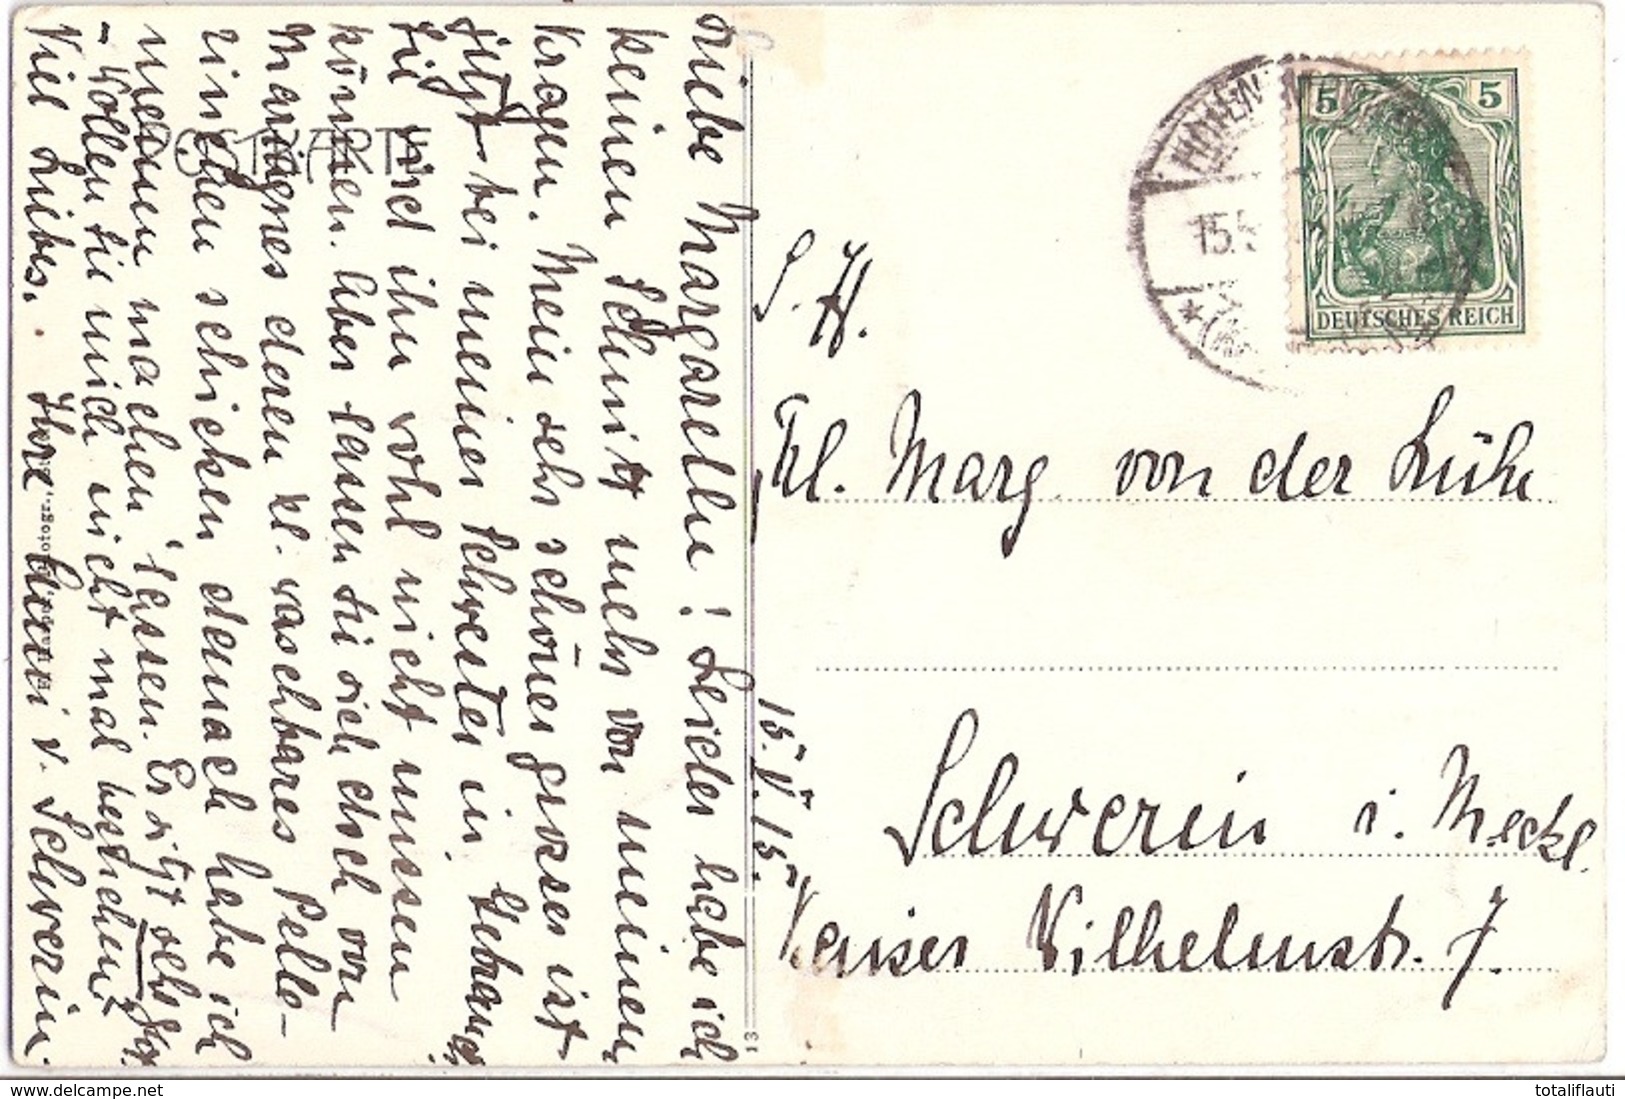 HOHENBRÜNZOW Schloß Bei Demmin Autograf Adel Anni Von Schwerin An Von Der Lühe Gelaufen 15.5.1915 - Demmin